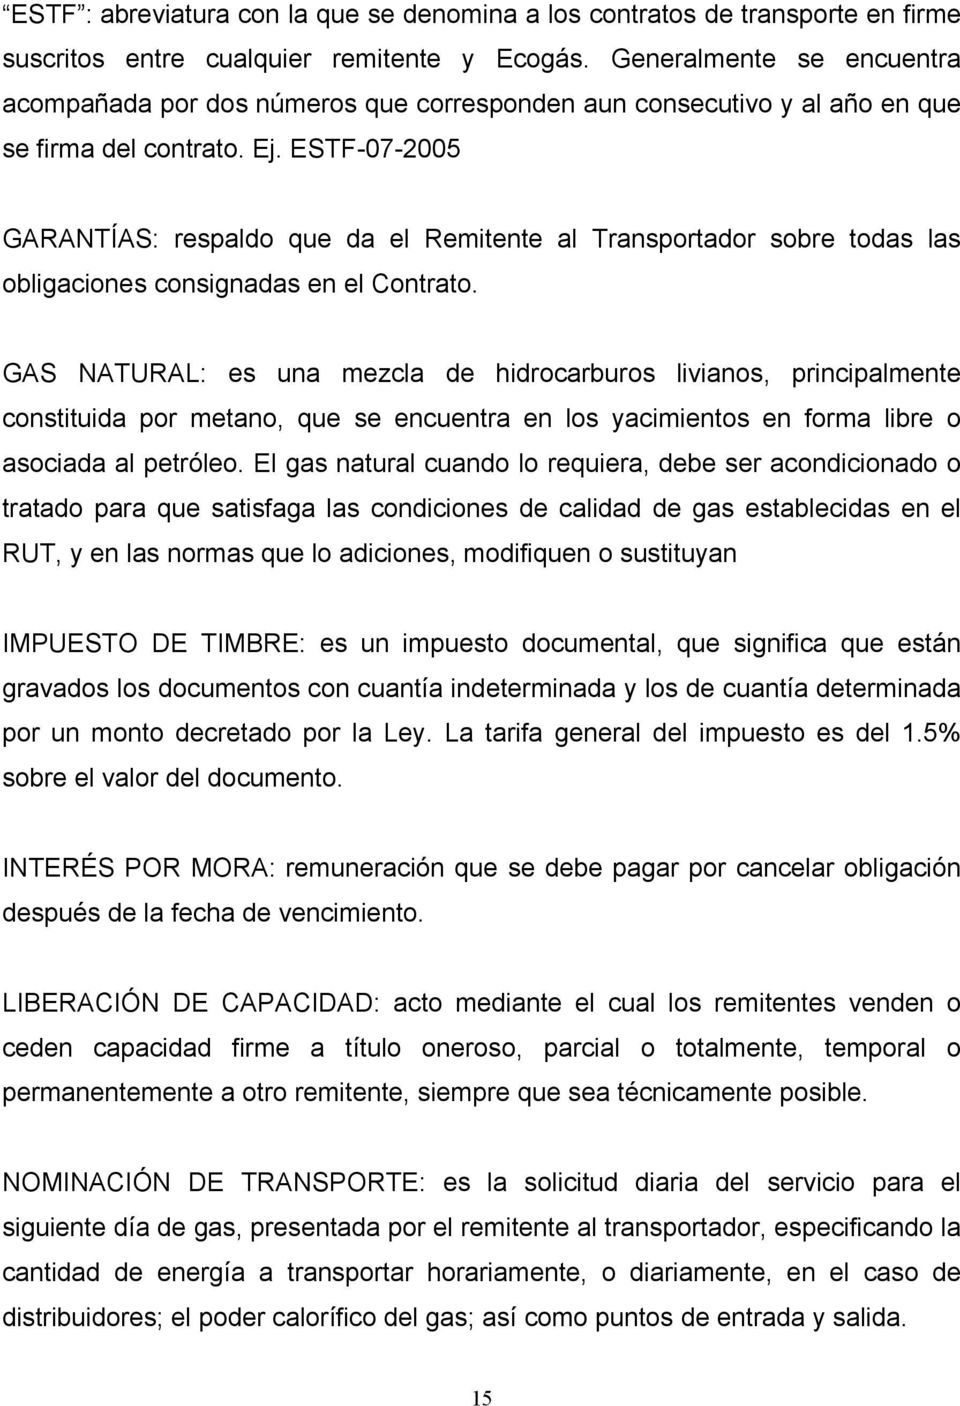 ESTF-07-2005 GARANTÍAS: respaldo que da el Remitente al Transportador sobre todas las obligaciones consignadas en el Contrato.